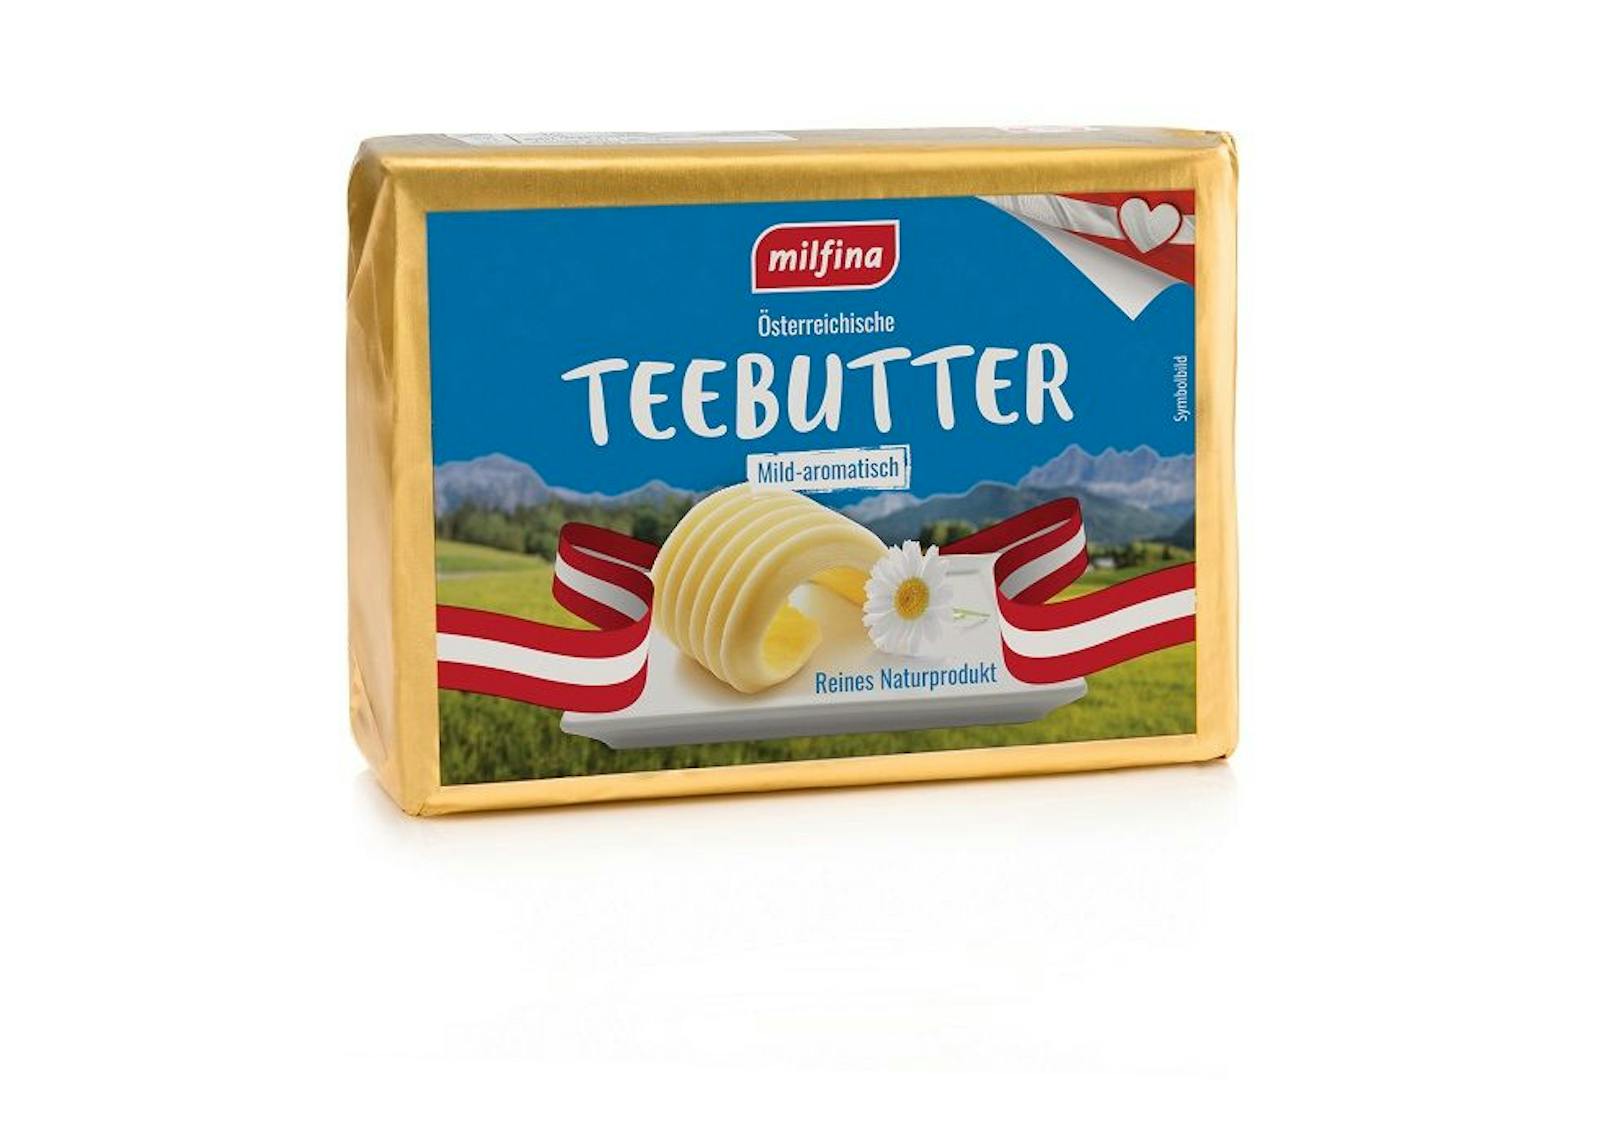 Die Supermarkt-Kette Hofer dreht jetzt an der Preisschraube - ab 8. Mai können sich Kunden in allen österreichischen Hofer-Filialen selbst überzeugen: die Butterpreise werden gesenkt! Zum Beispiel wird die MILFINA Butter um günstige 1,85 Euro angeboten.